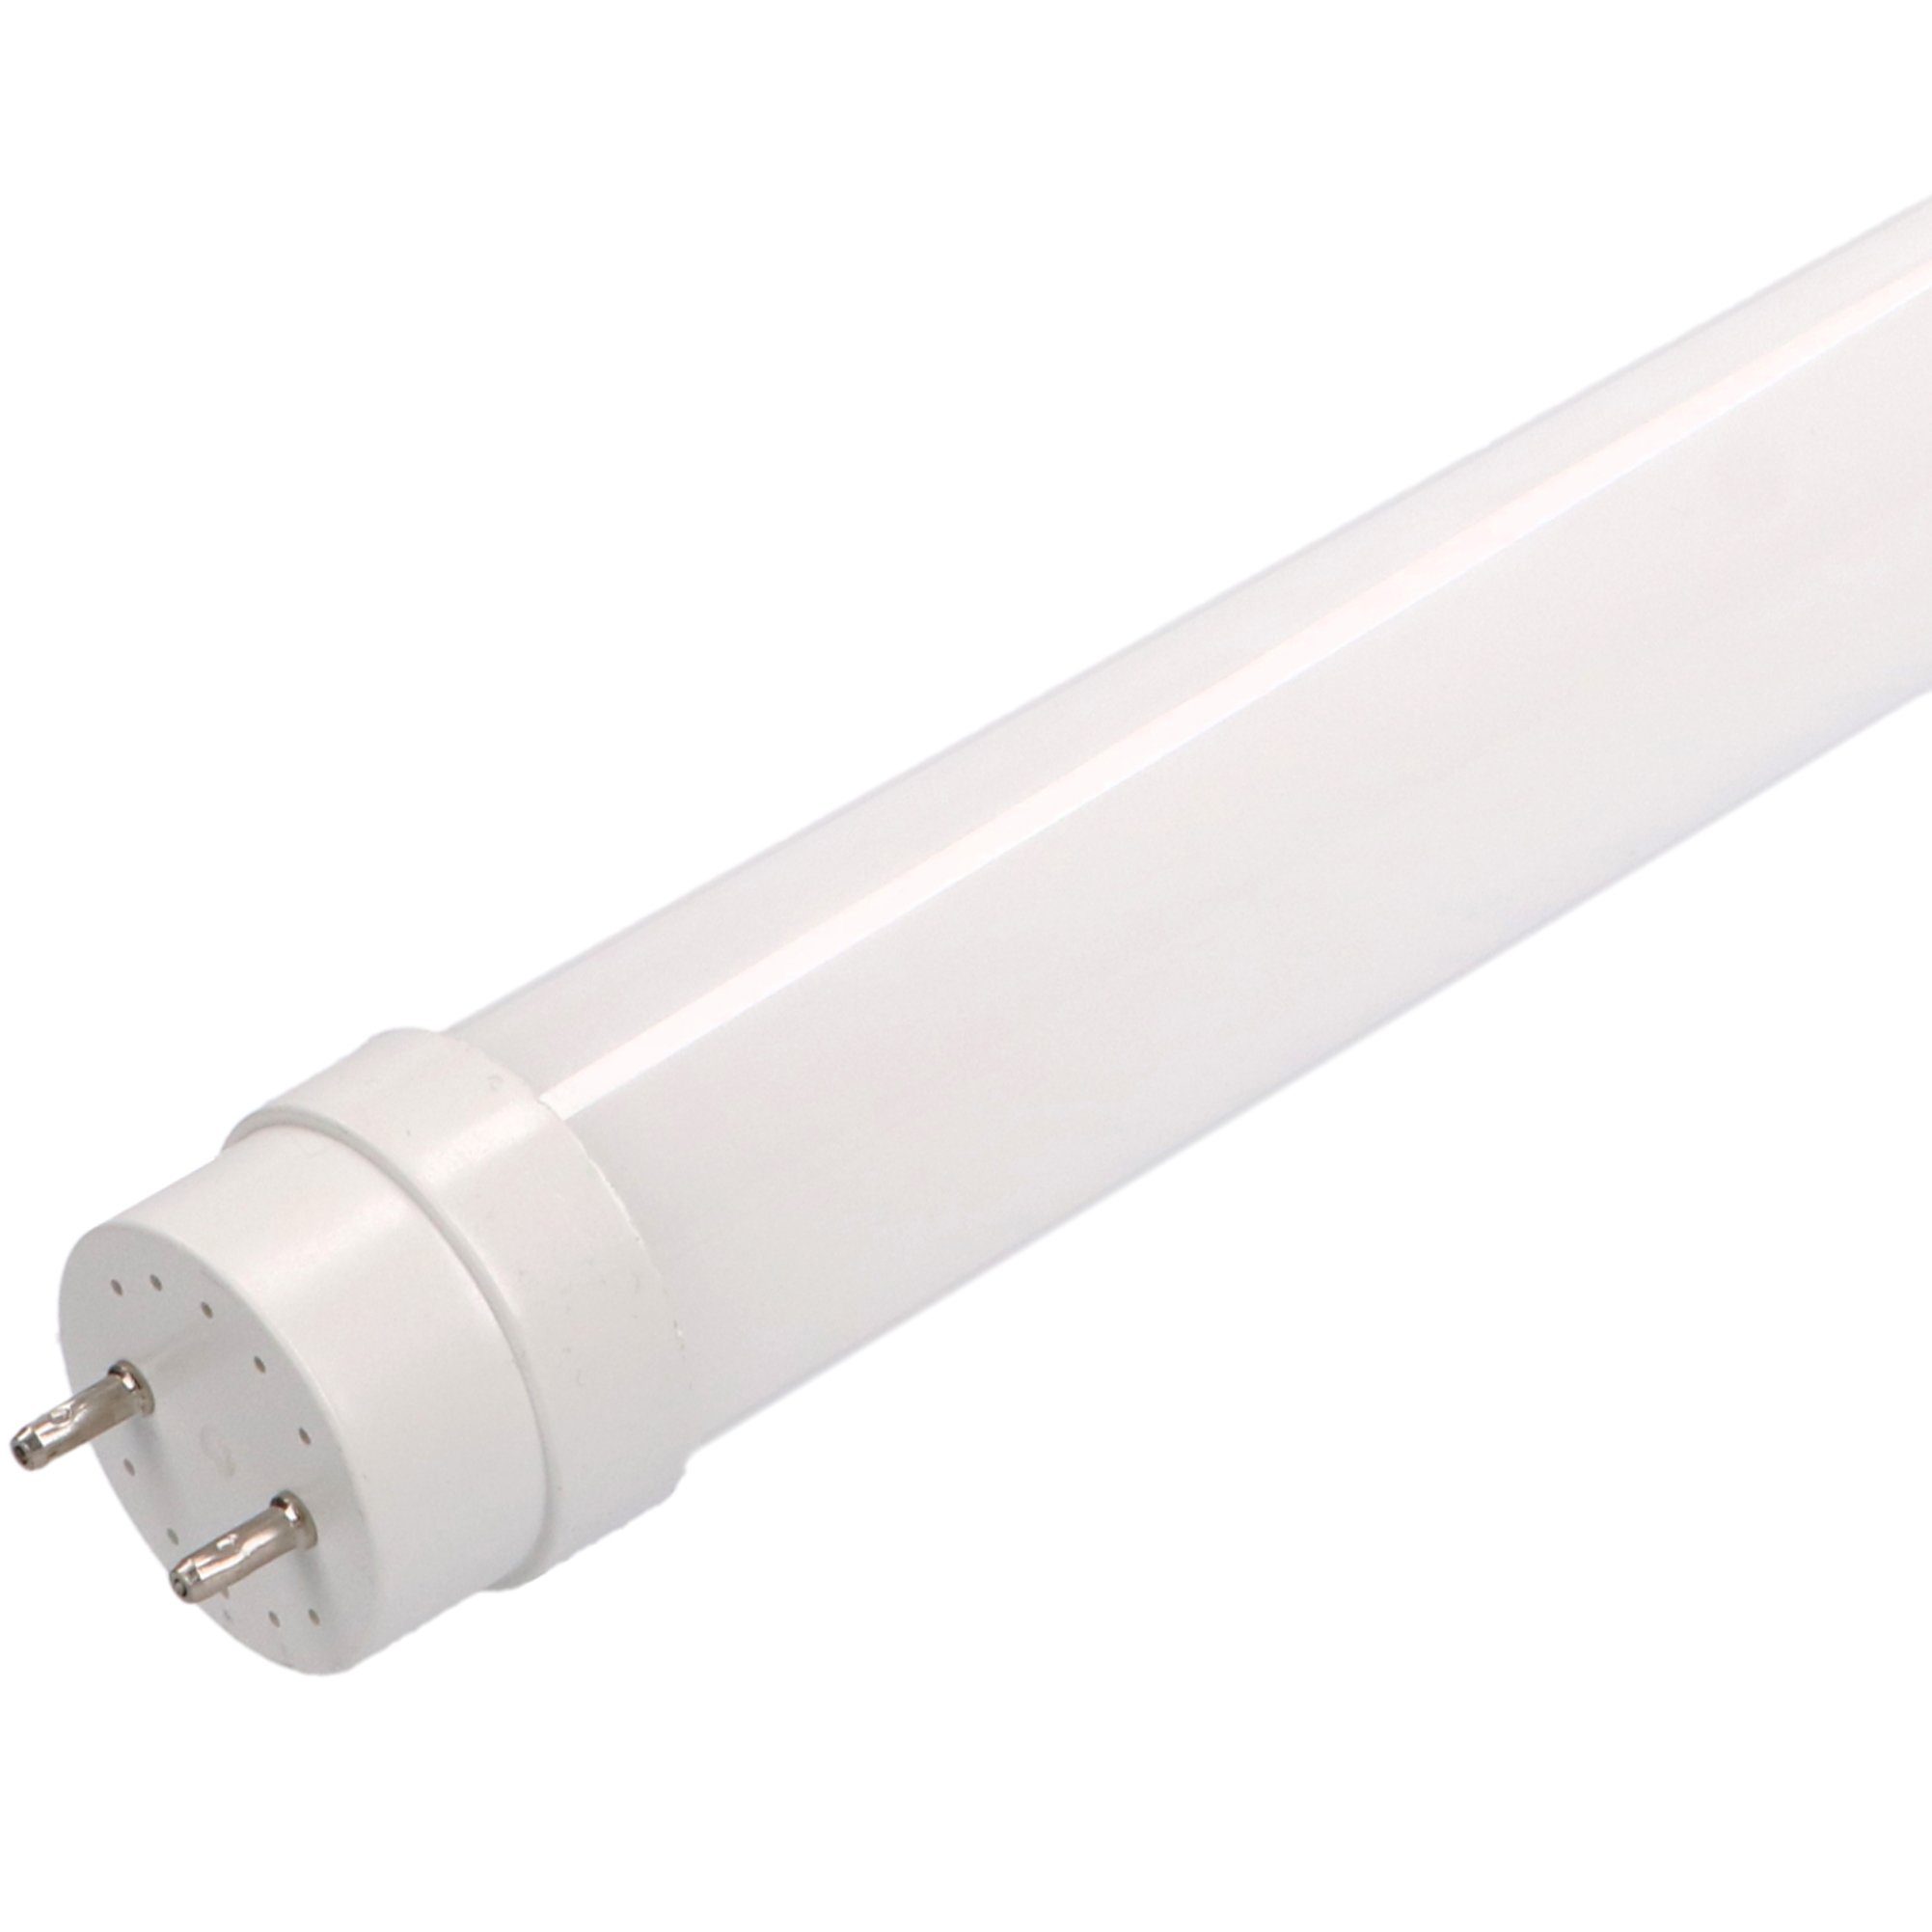 LED's light Basic LED-Leuchtmittel 0610724 LED-Röhre, 90 cm 12 Watt neutralweiß G13 mit Starter für KVG/VVG